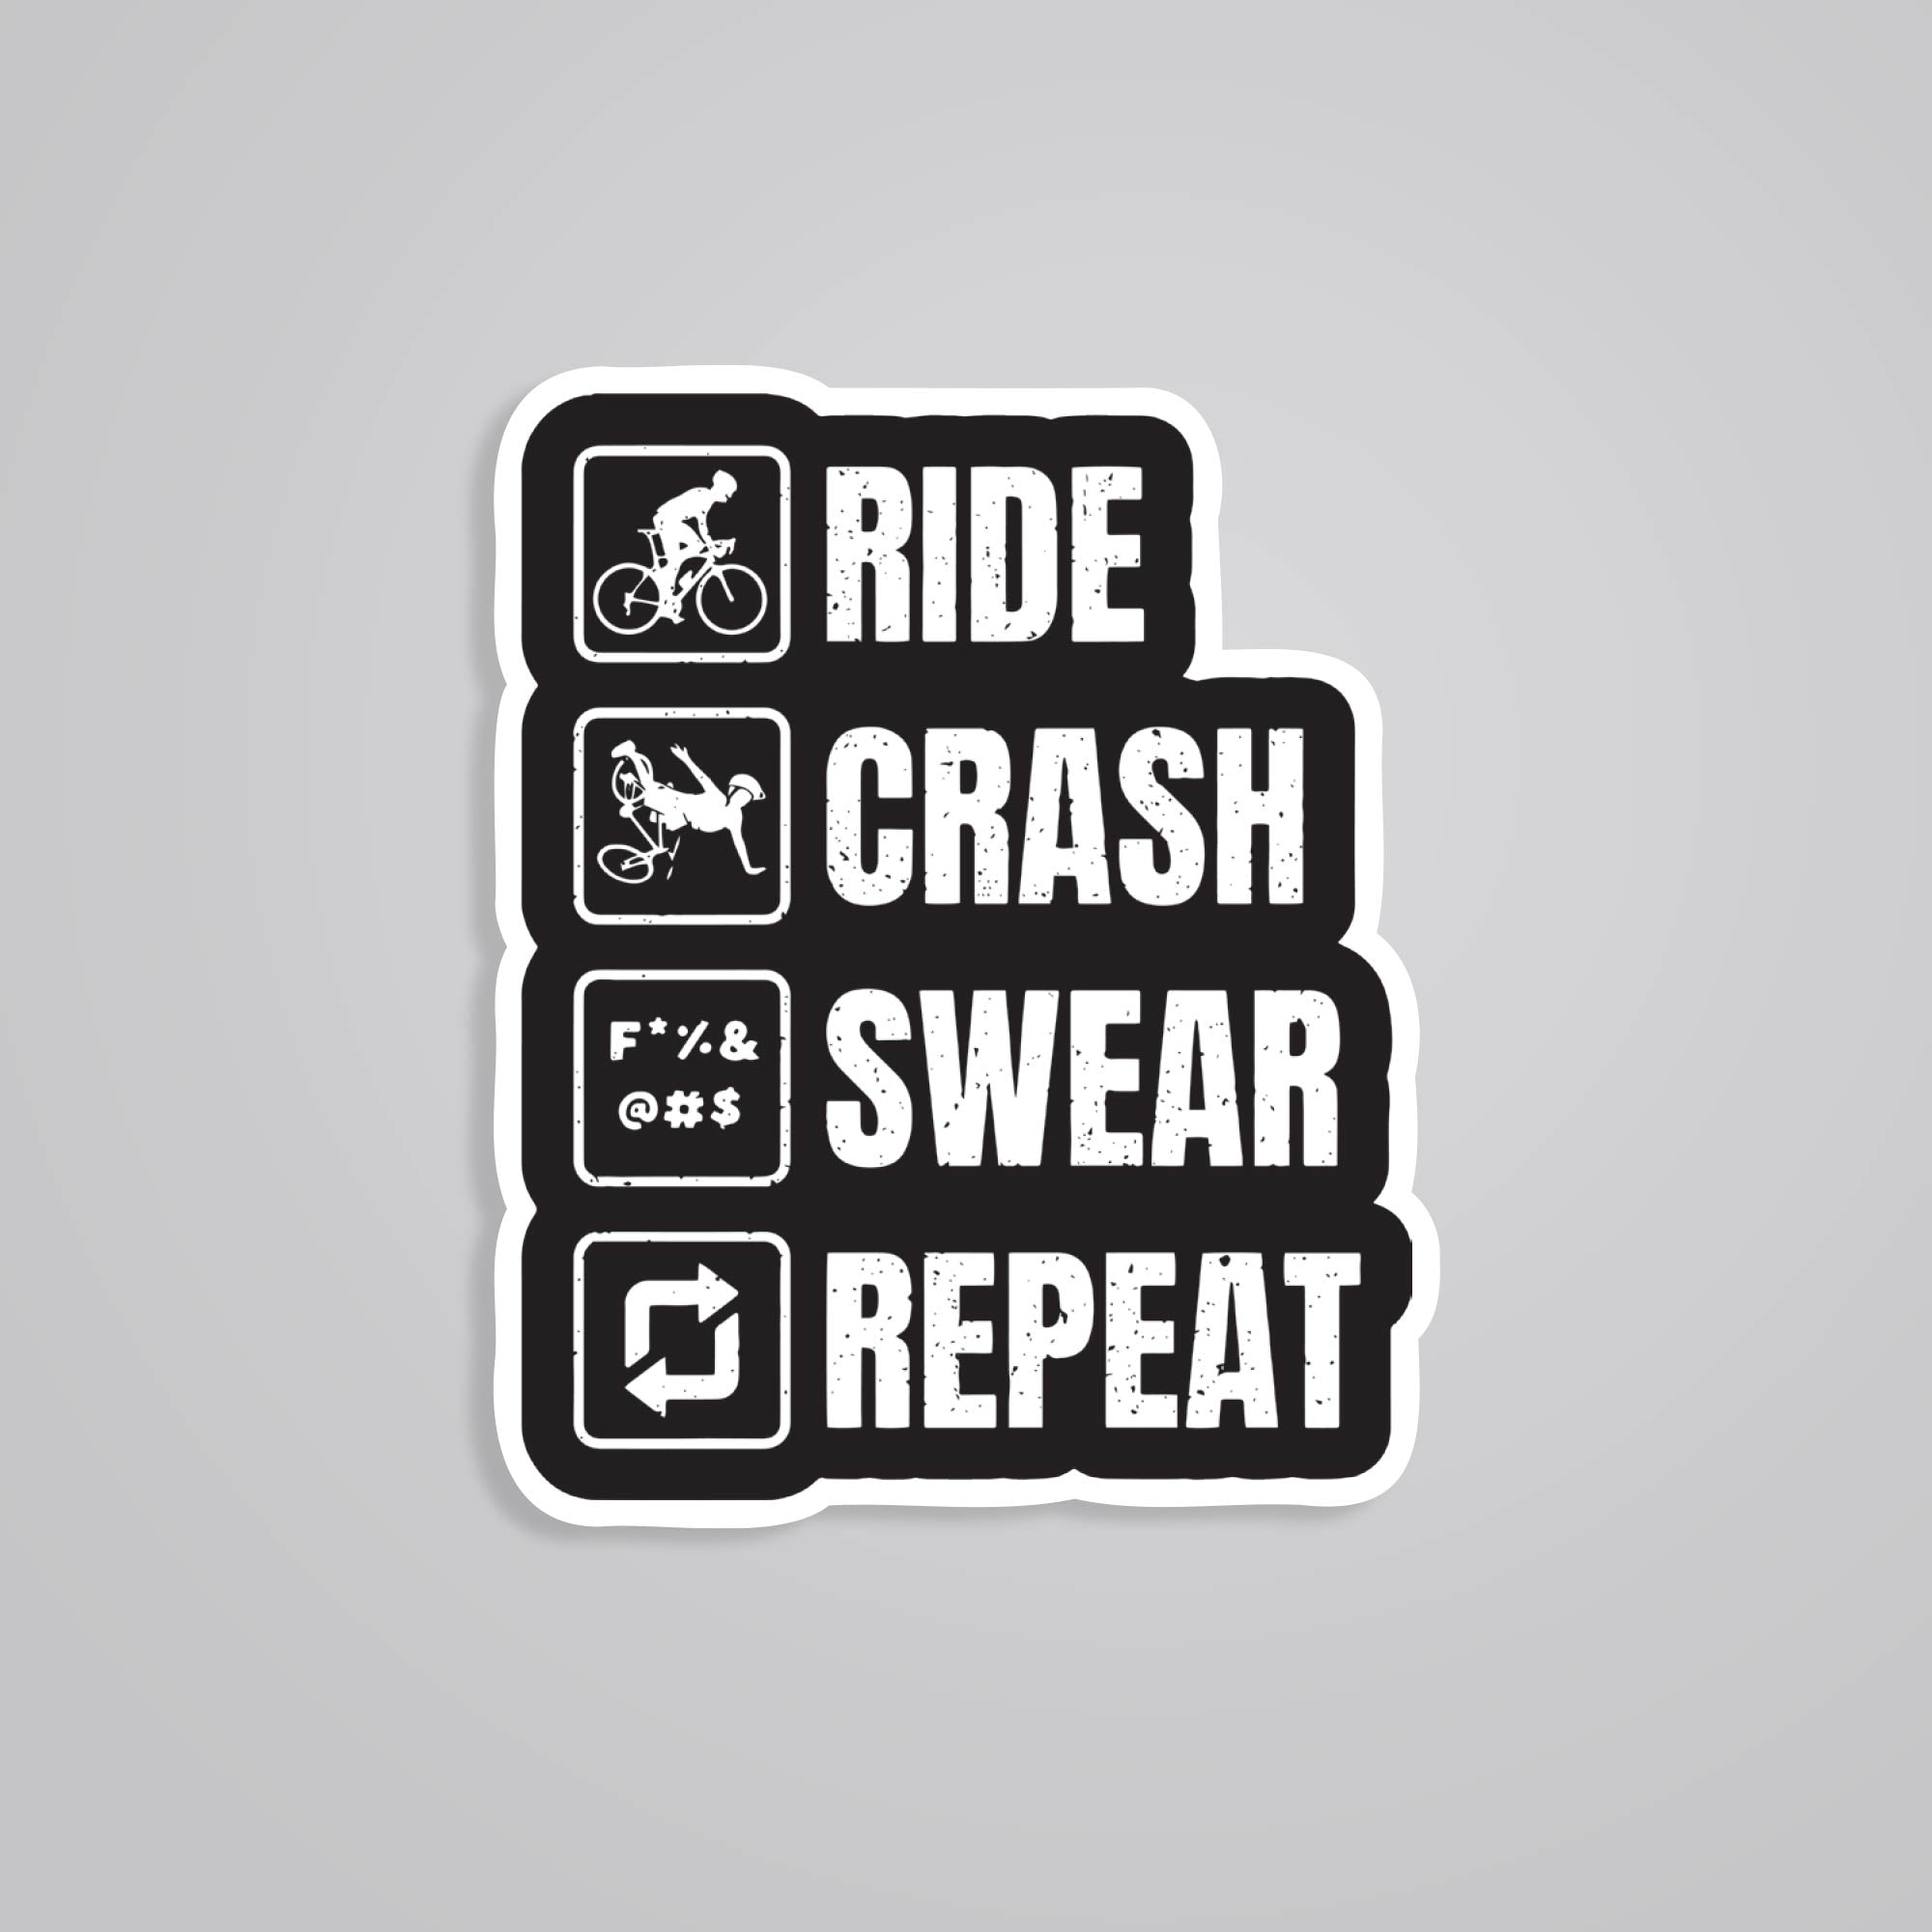 Fomo Store Stickers Cars & Bikes Ride Crash Swear Repeat